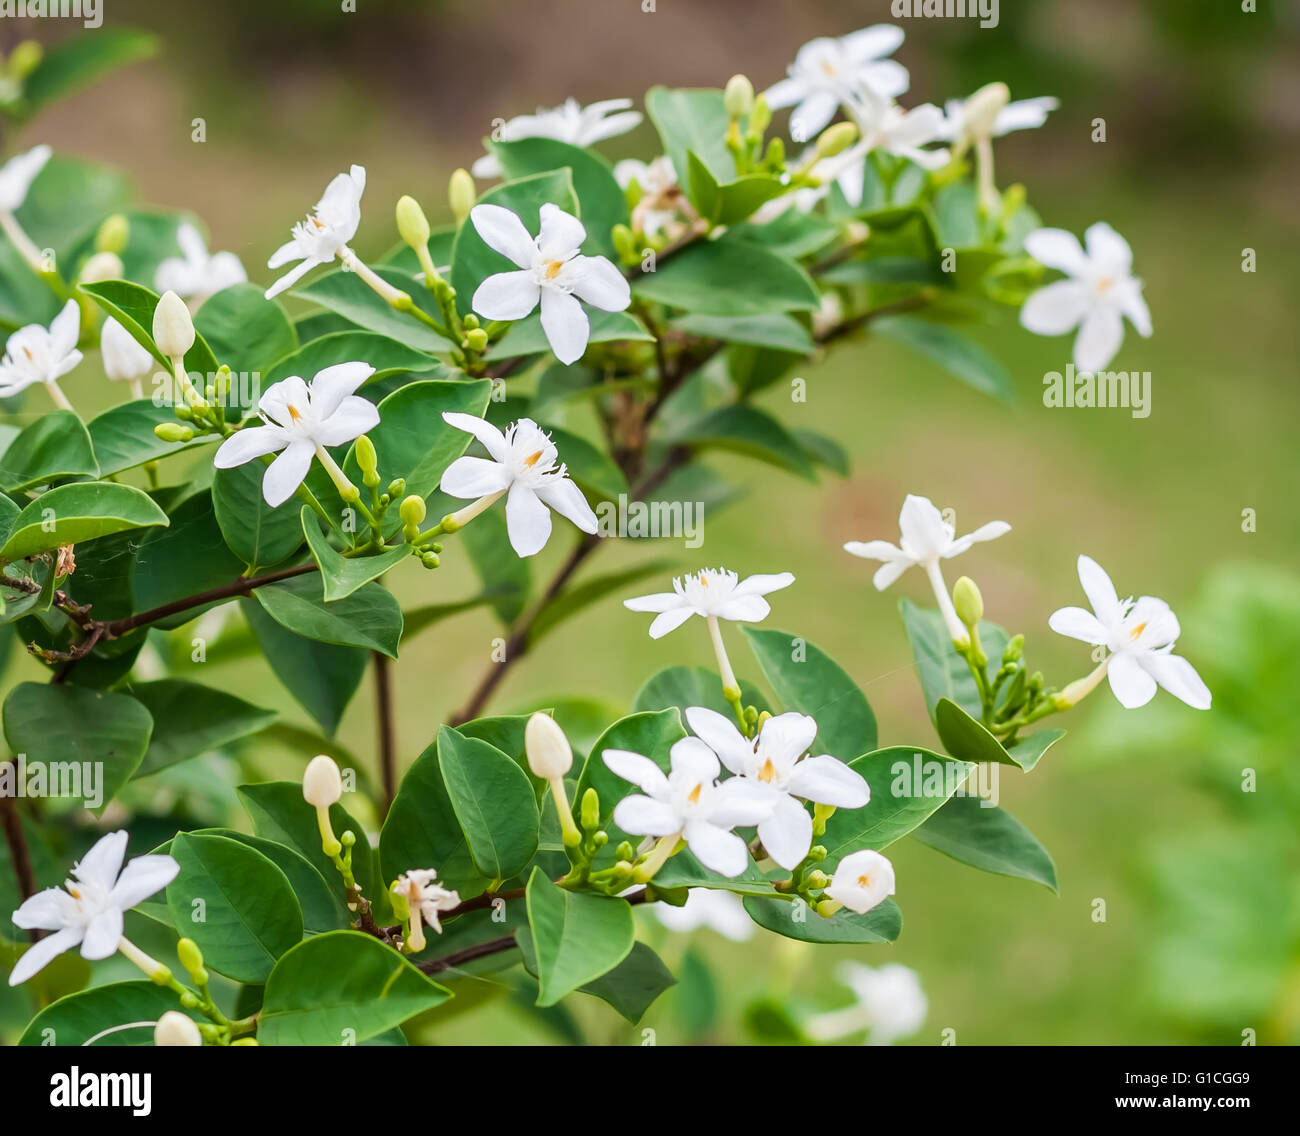 Snowflake or wrightia antidysenterica flower. Stock Photo